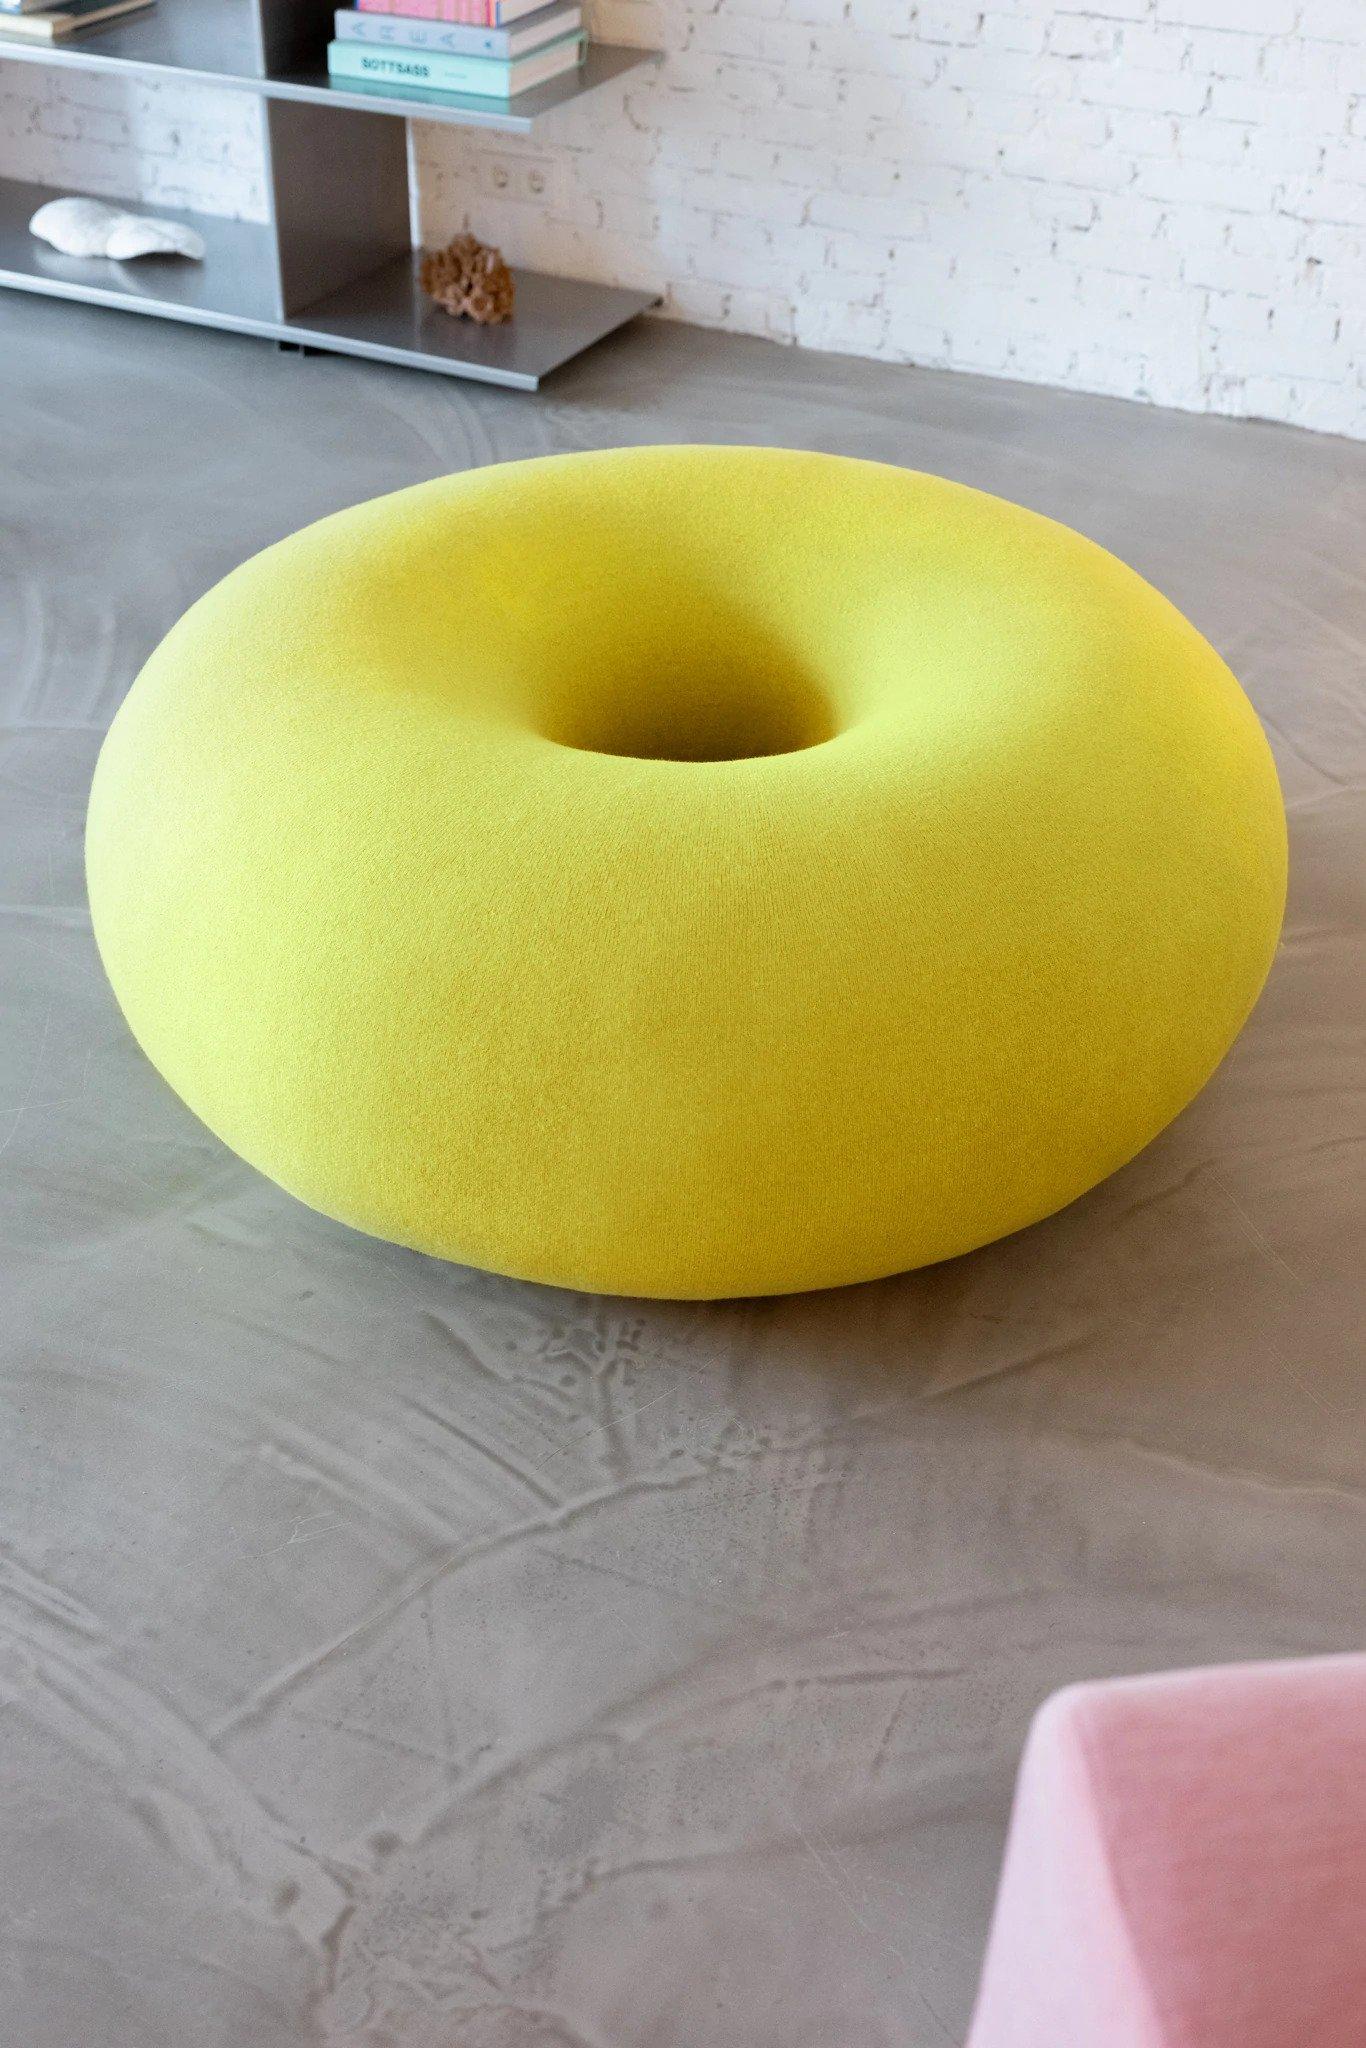 Der donutförmige Boa Pouf von Sabine Marcelis ist eine perfekte Skulptur, eine kühne grafische Form, die mit ihrer makellosen, klobigen Geometrie Raumlandschaften unterbricht. Dieses gepolsterte Beistellmöbel ist rund und weich, umhüllt von einer